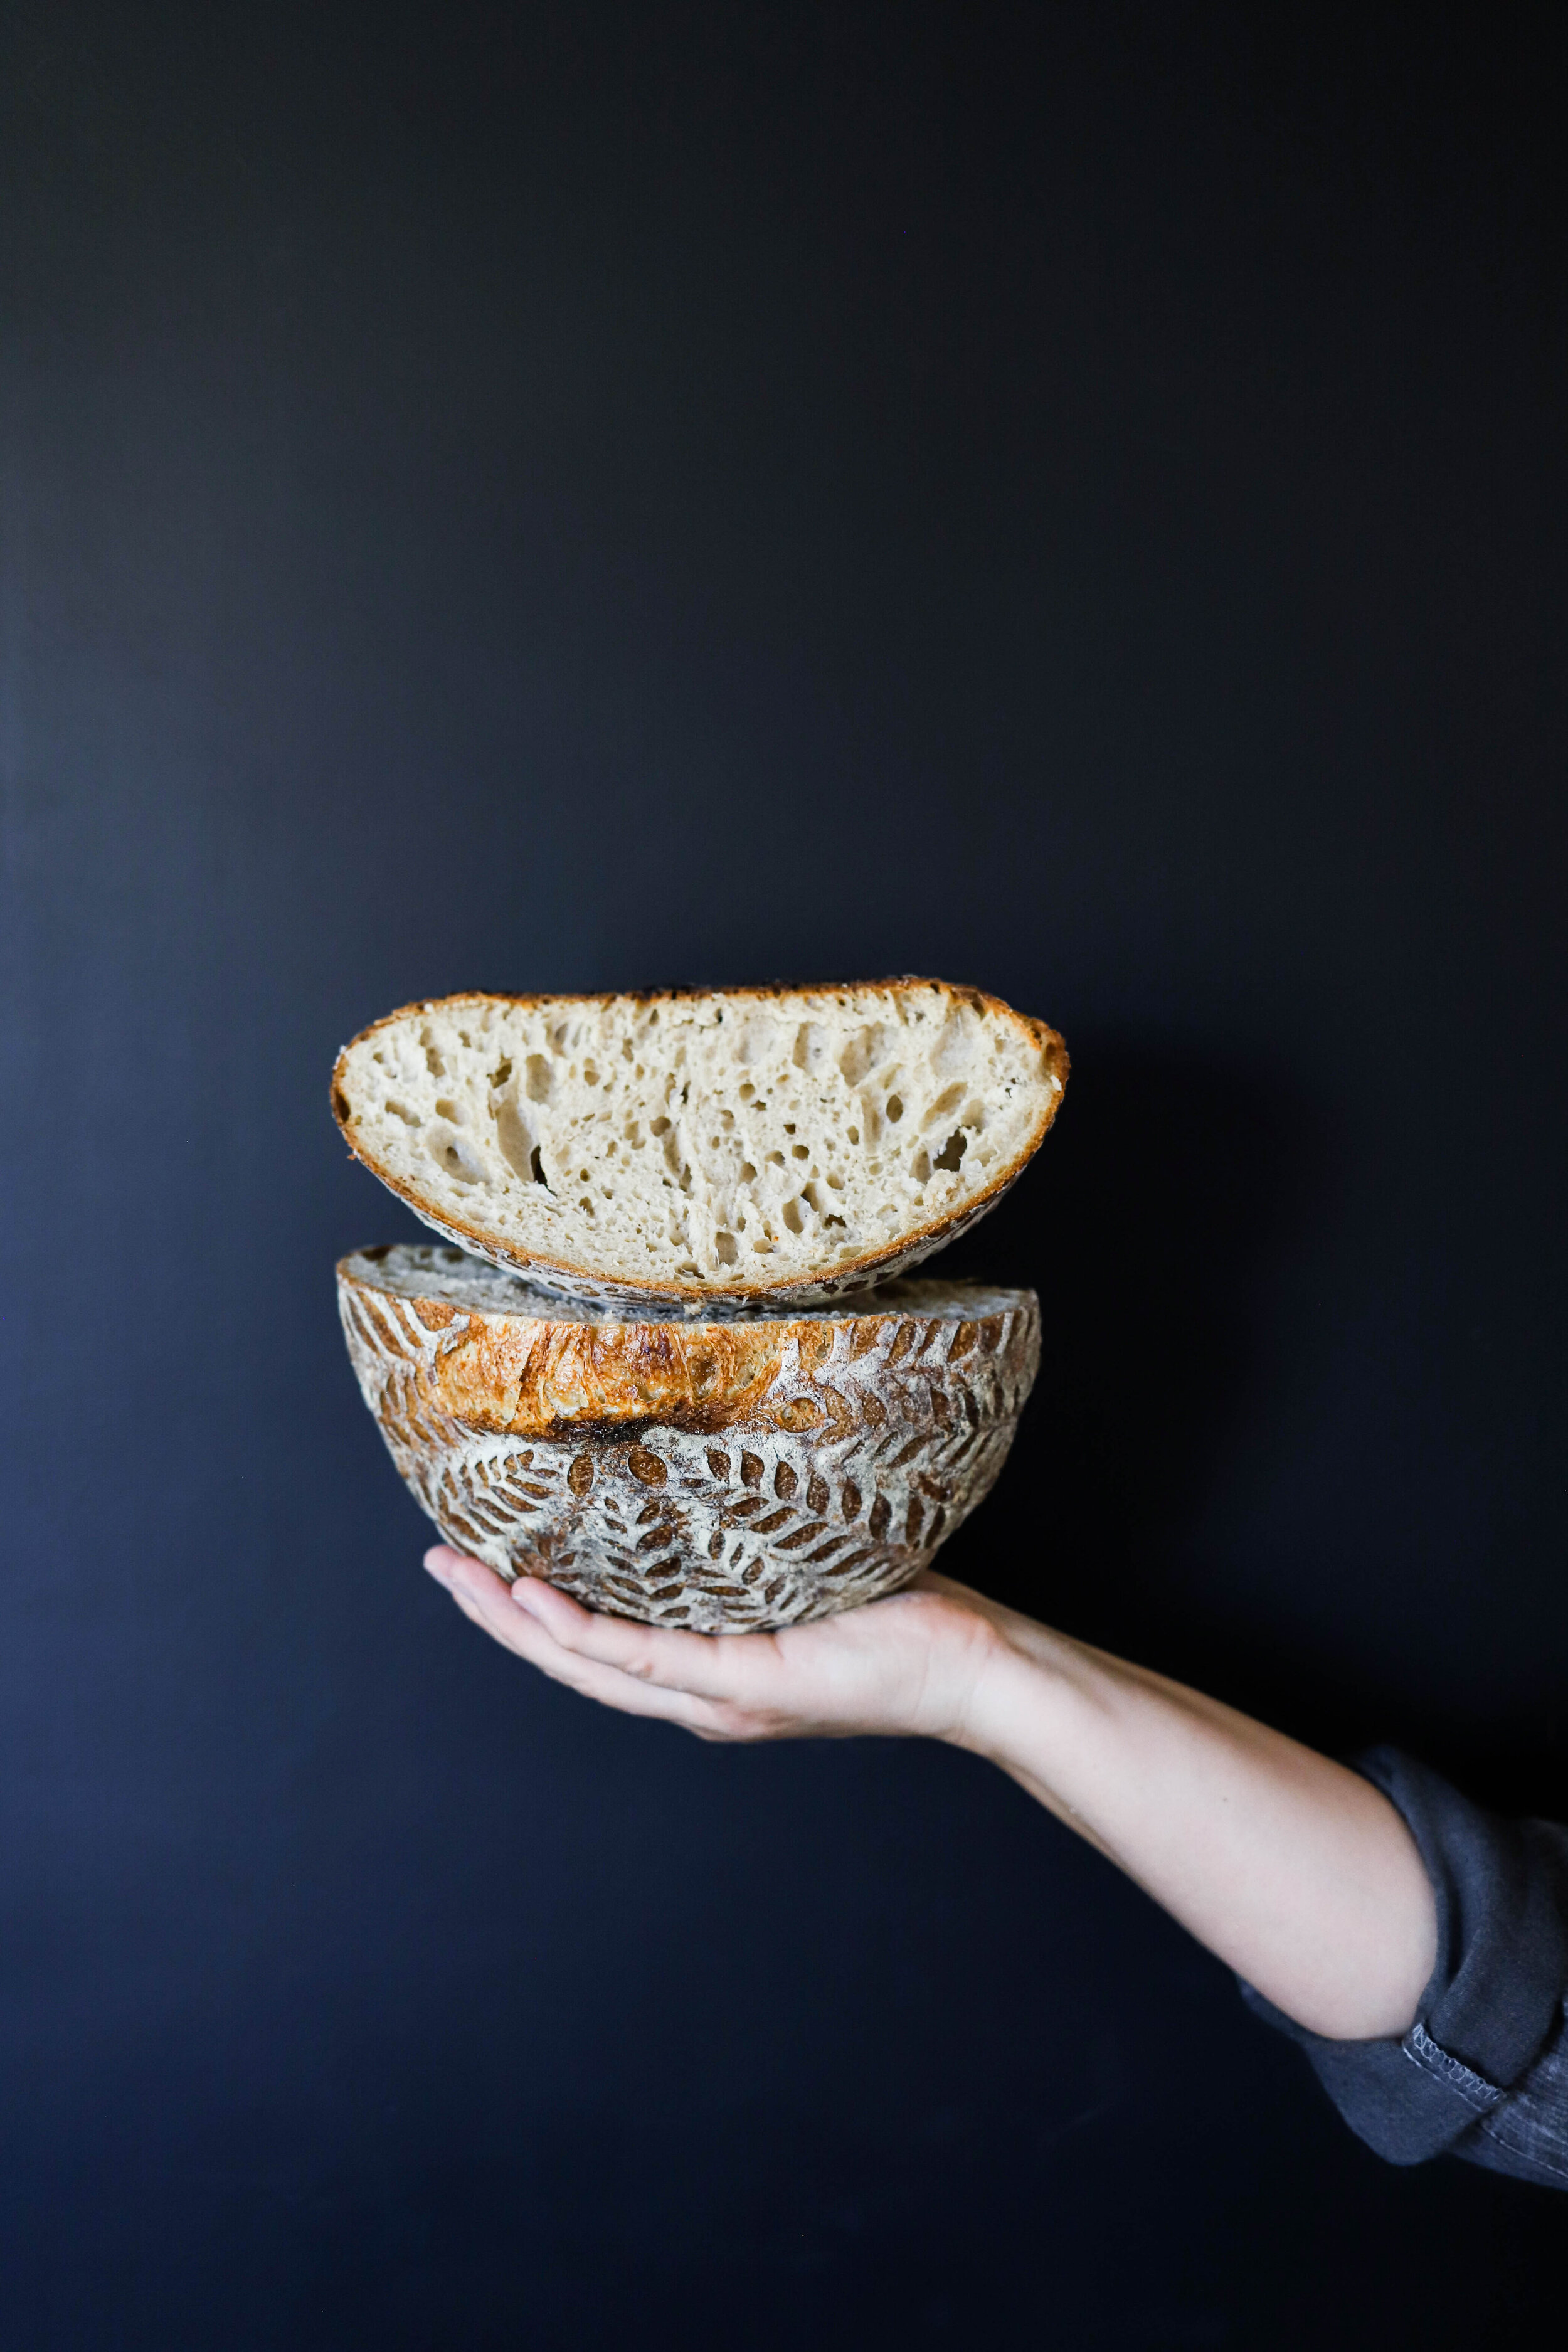 bread-102.jpg